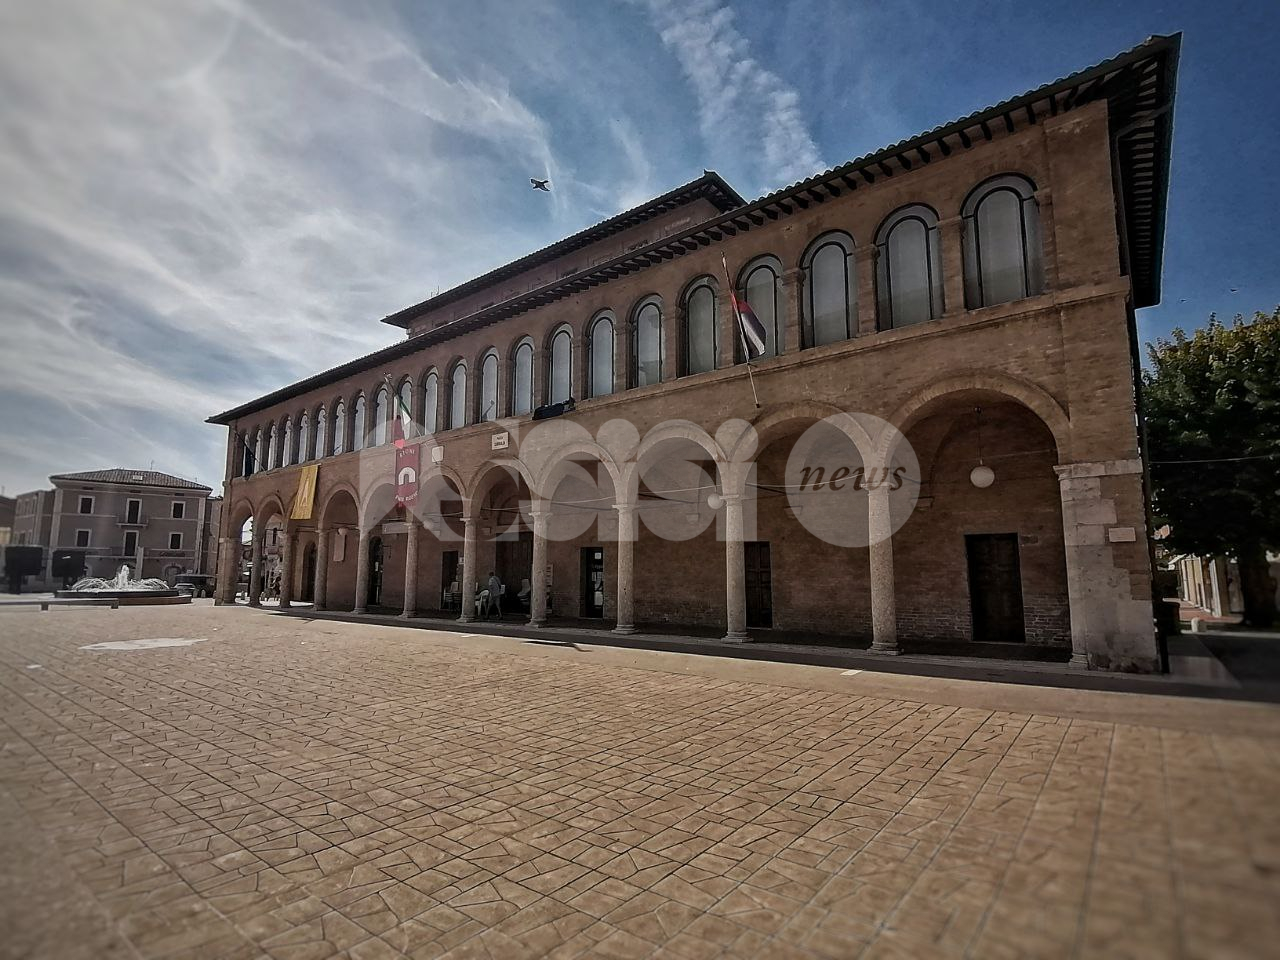 Digipass Assisi, venerdì 25 si parla dell'anagrafe nazionale digitale